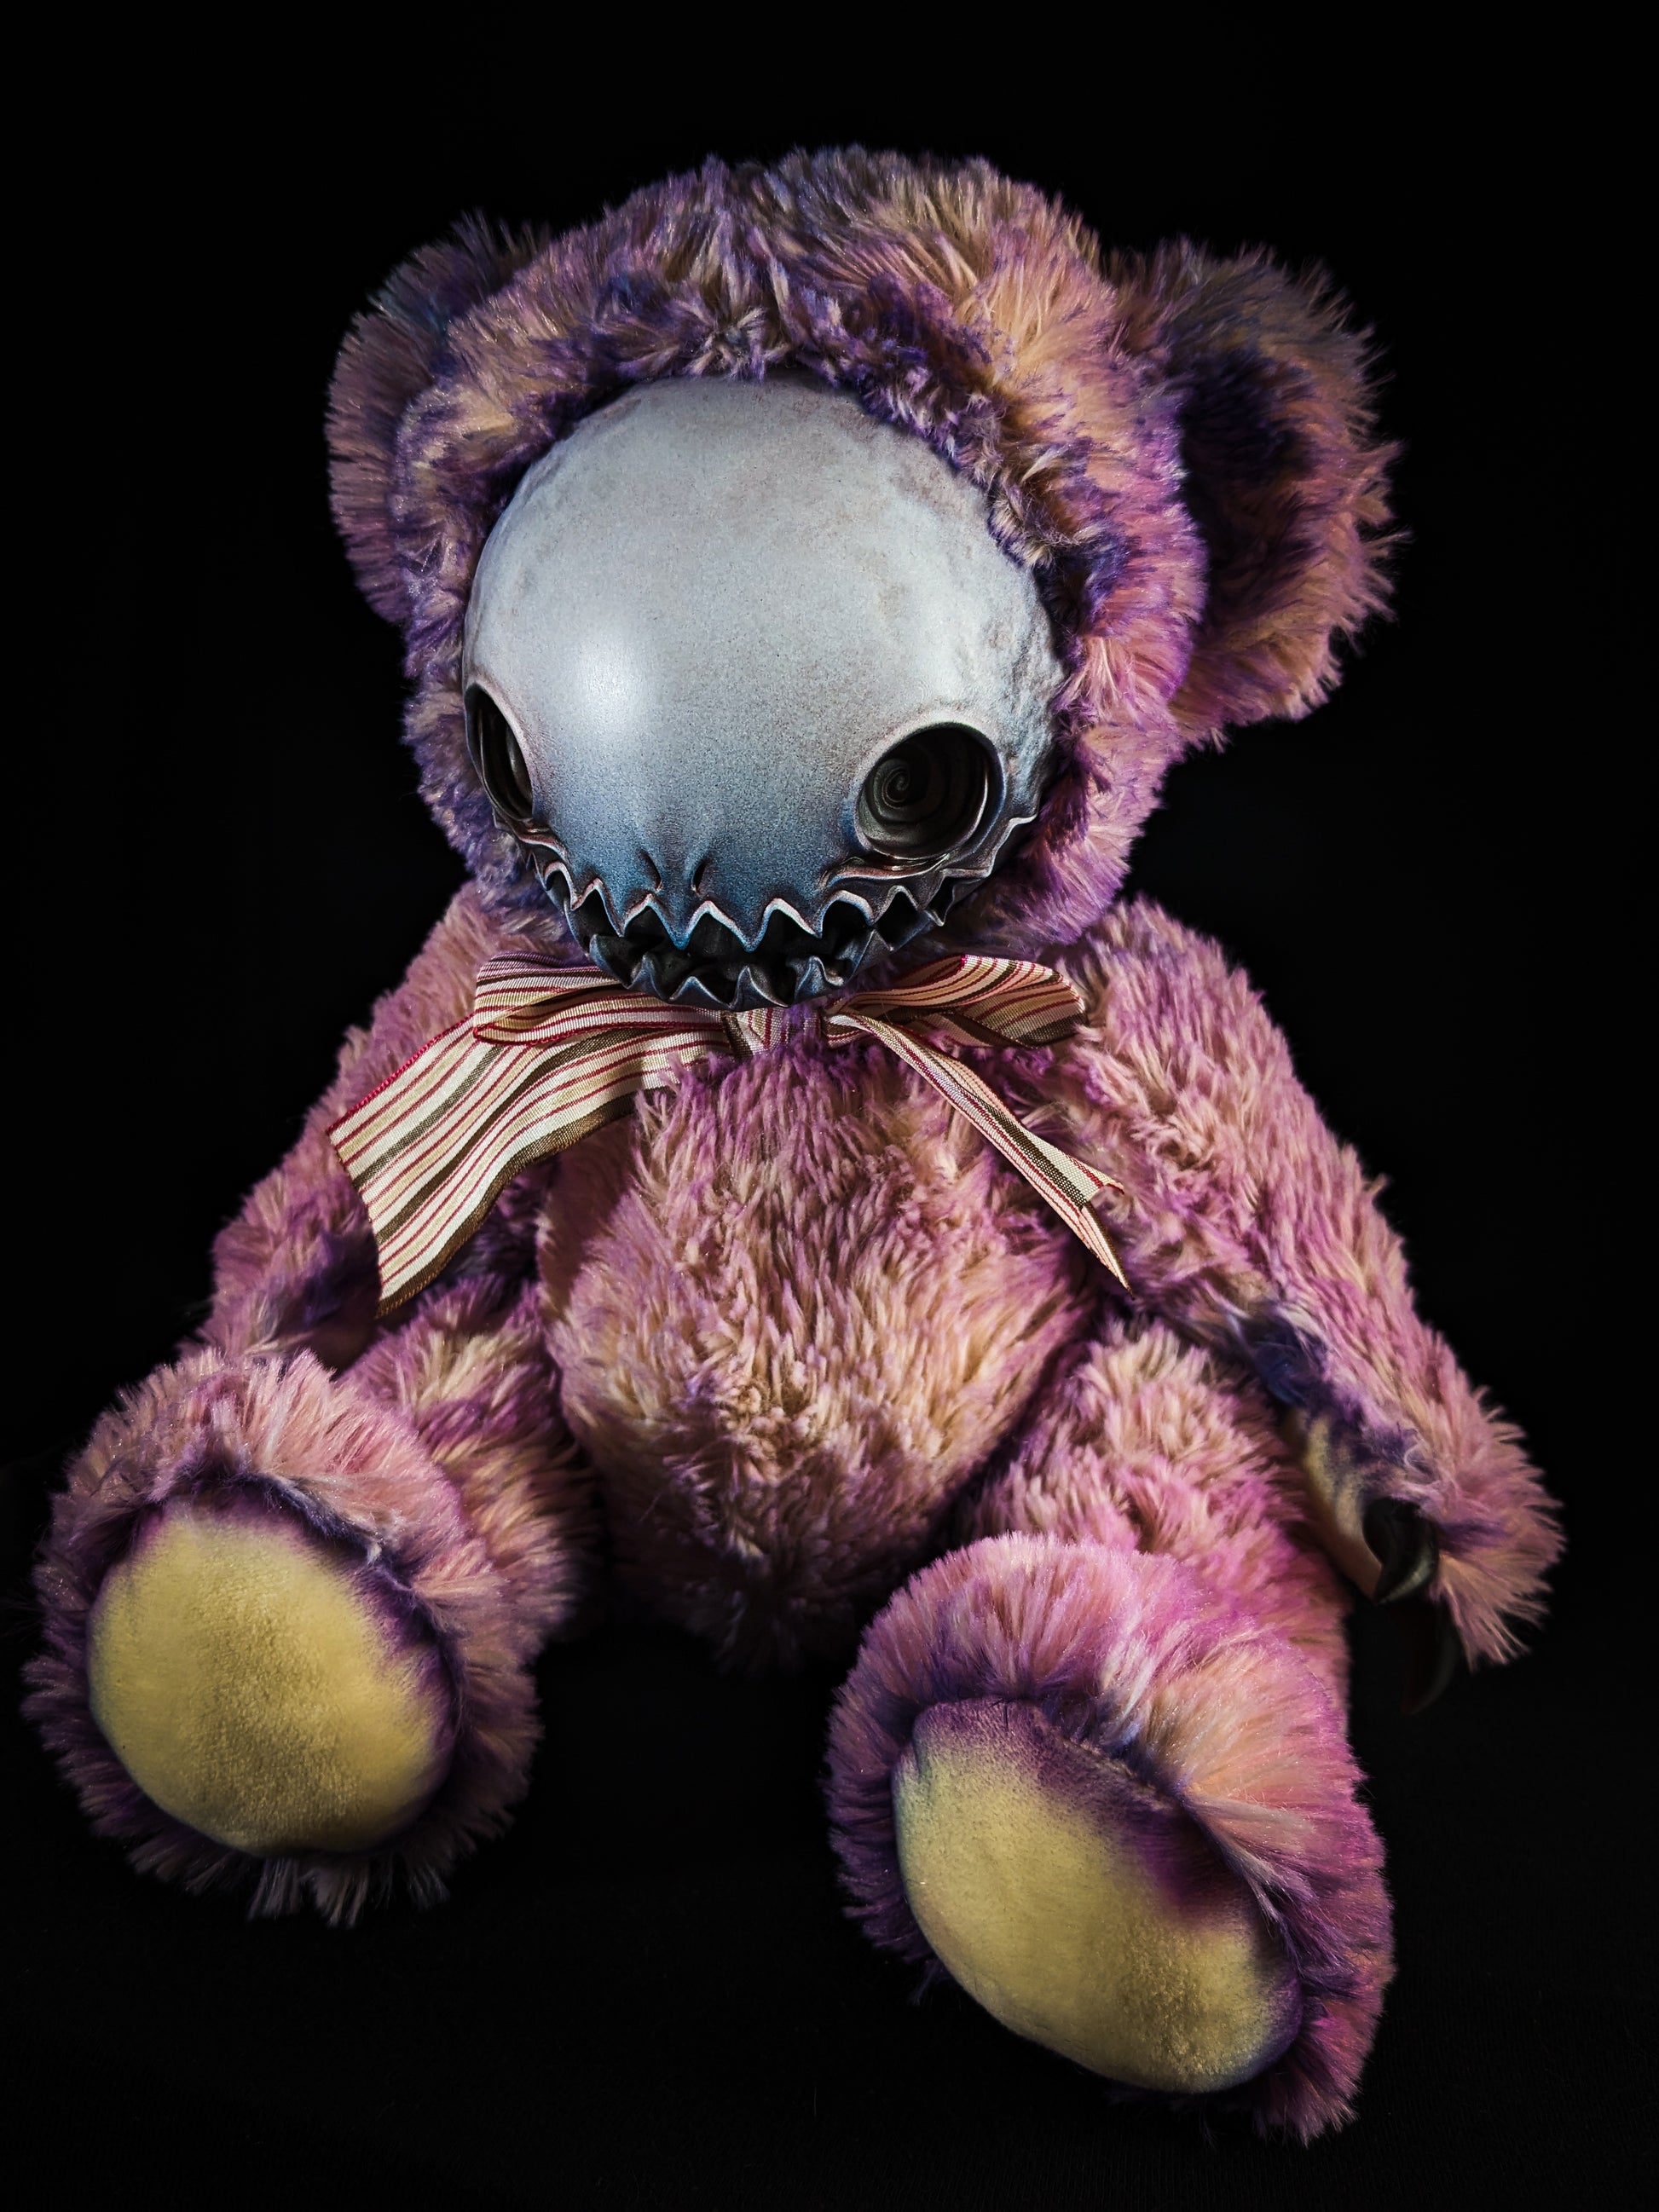 Haluwo (Ectofrenzy Ver.) - Monster Art Doll Plush Toy